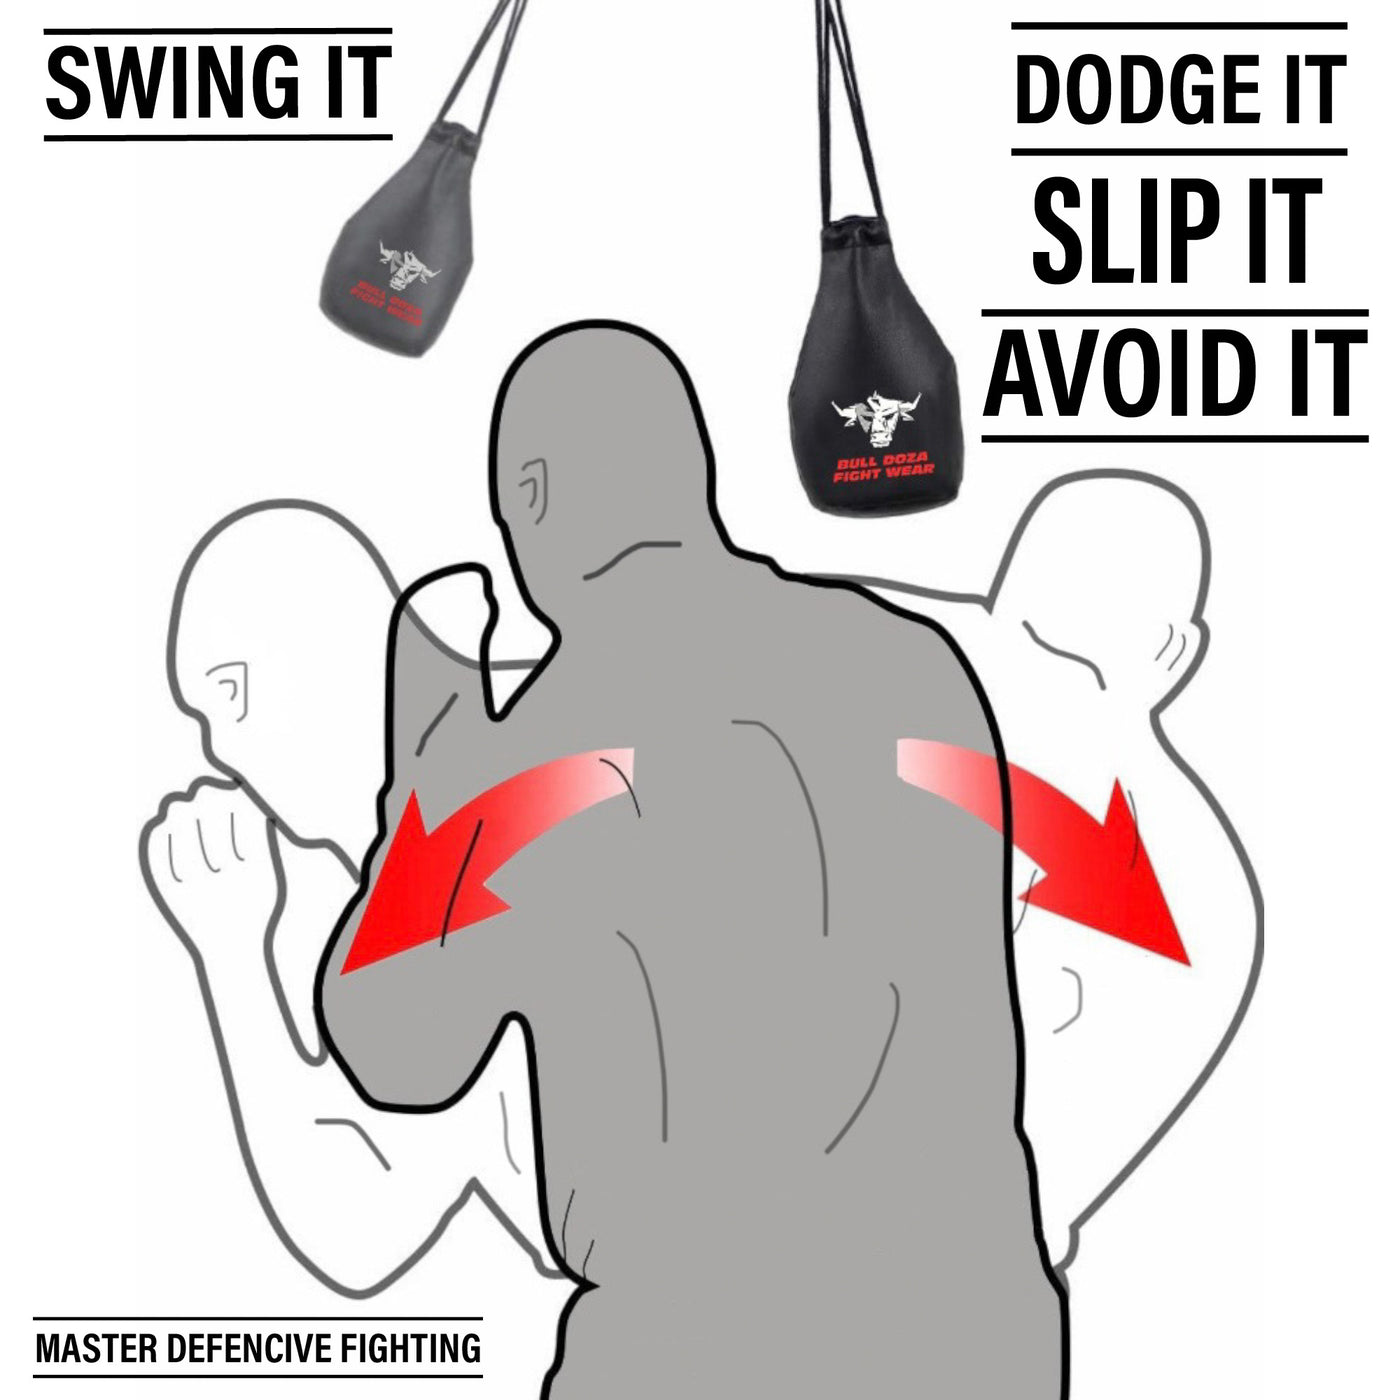 Slip Dodge Reaction Bag - Defence Tool